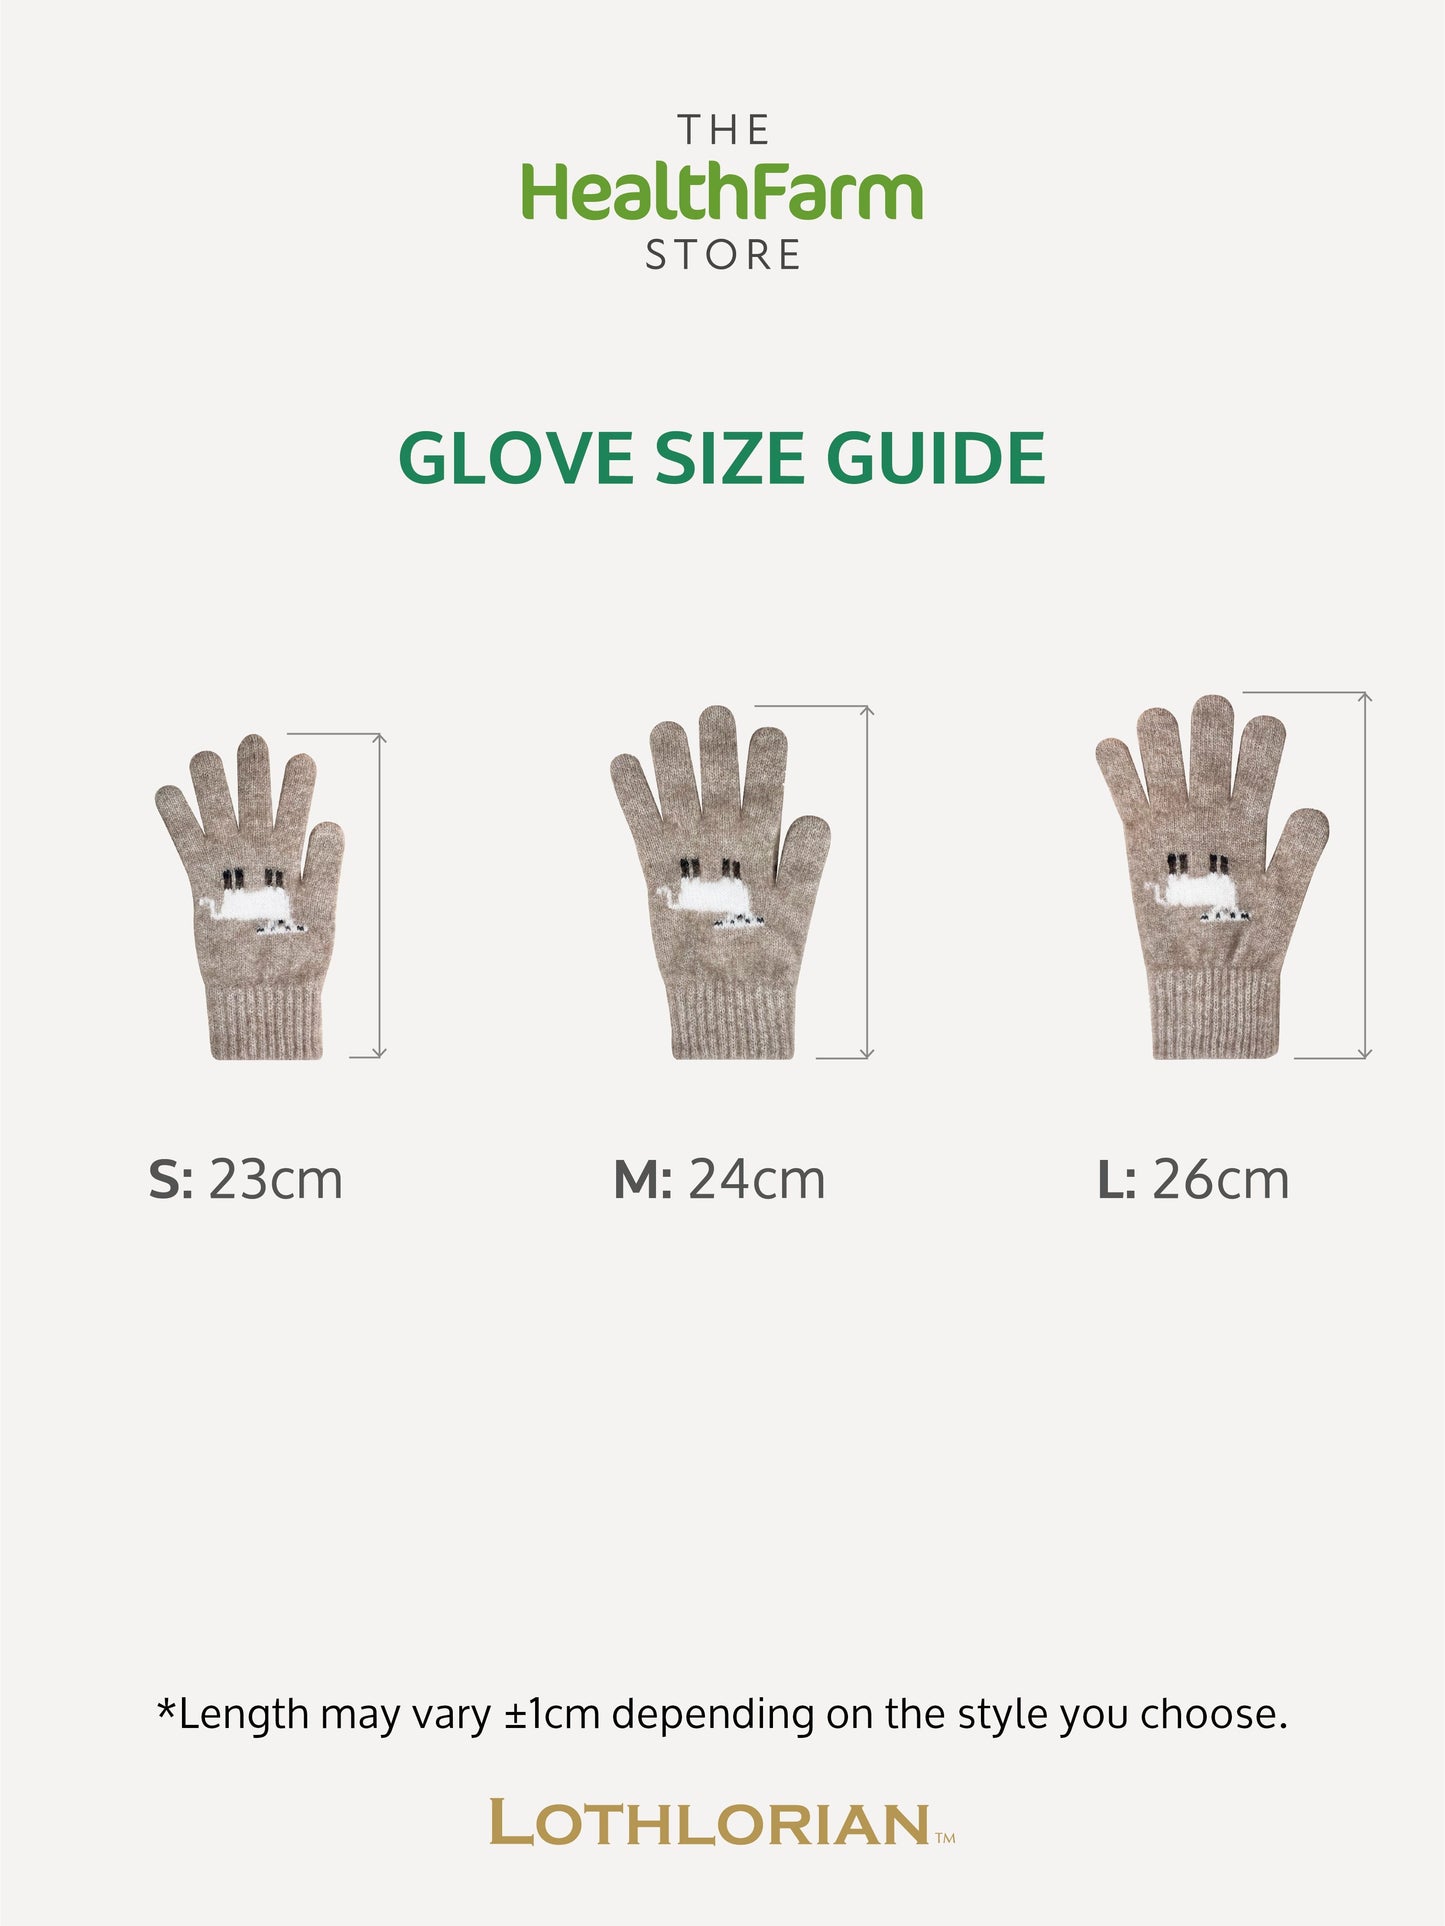 Merino & Possum Sheep Glove [9916]